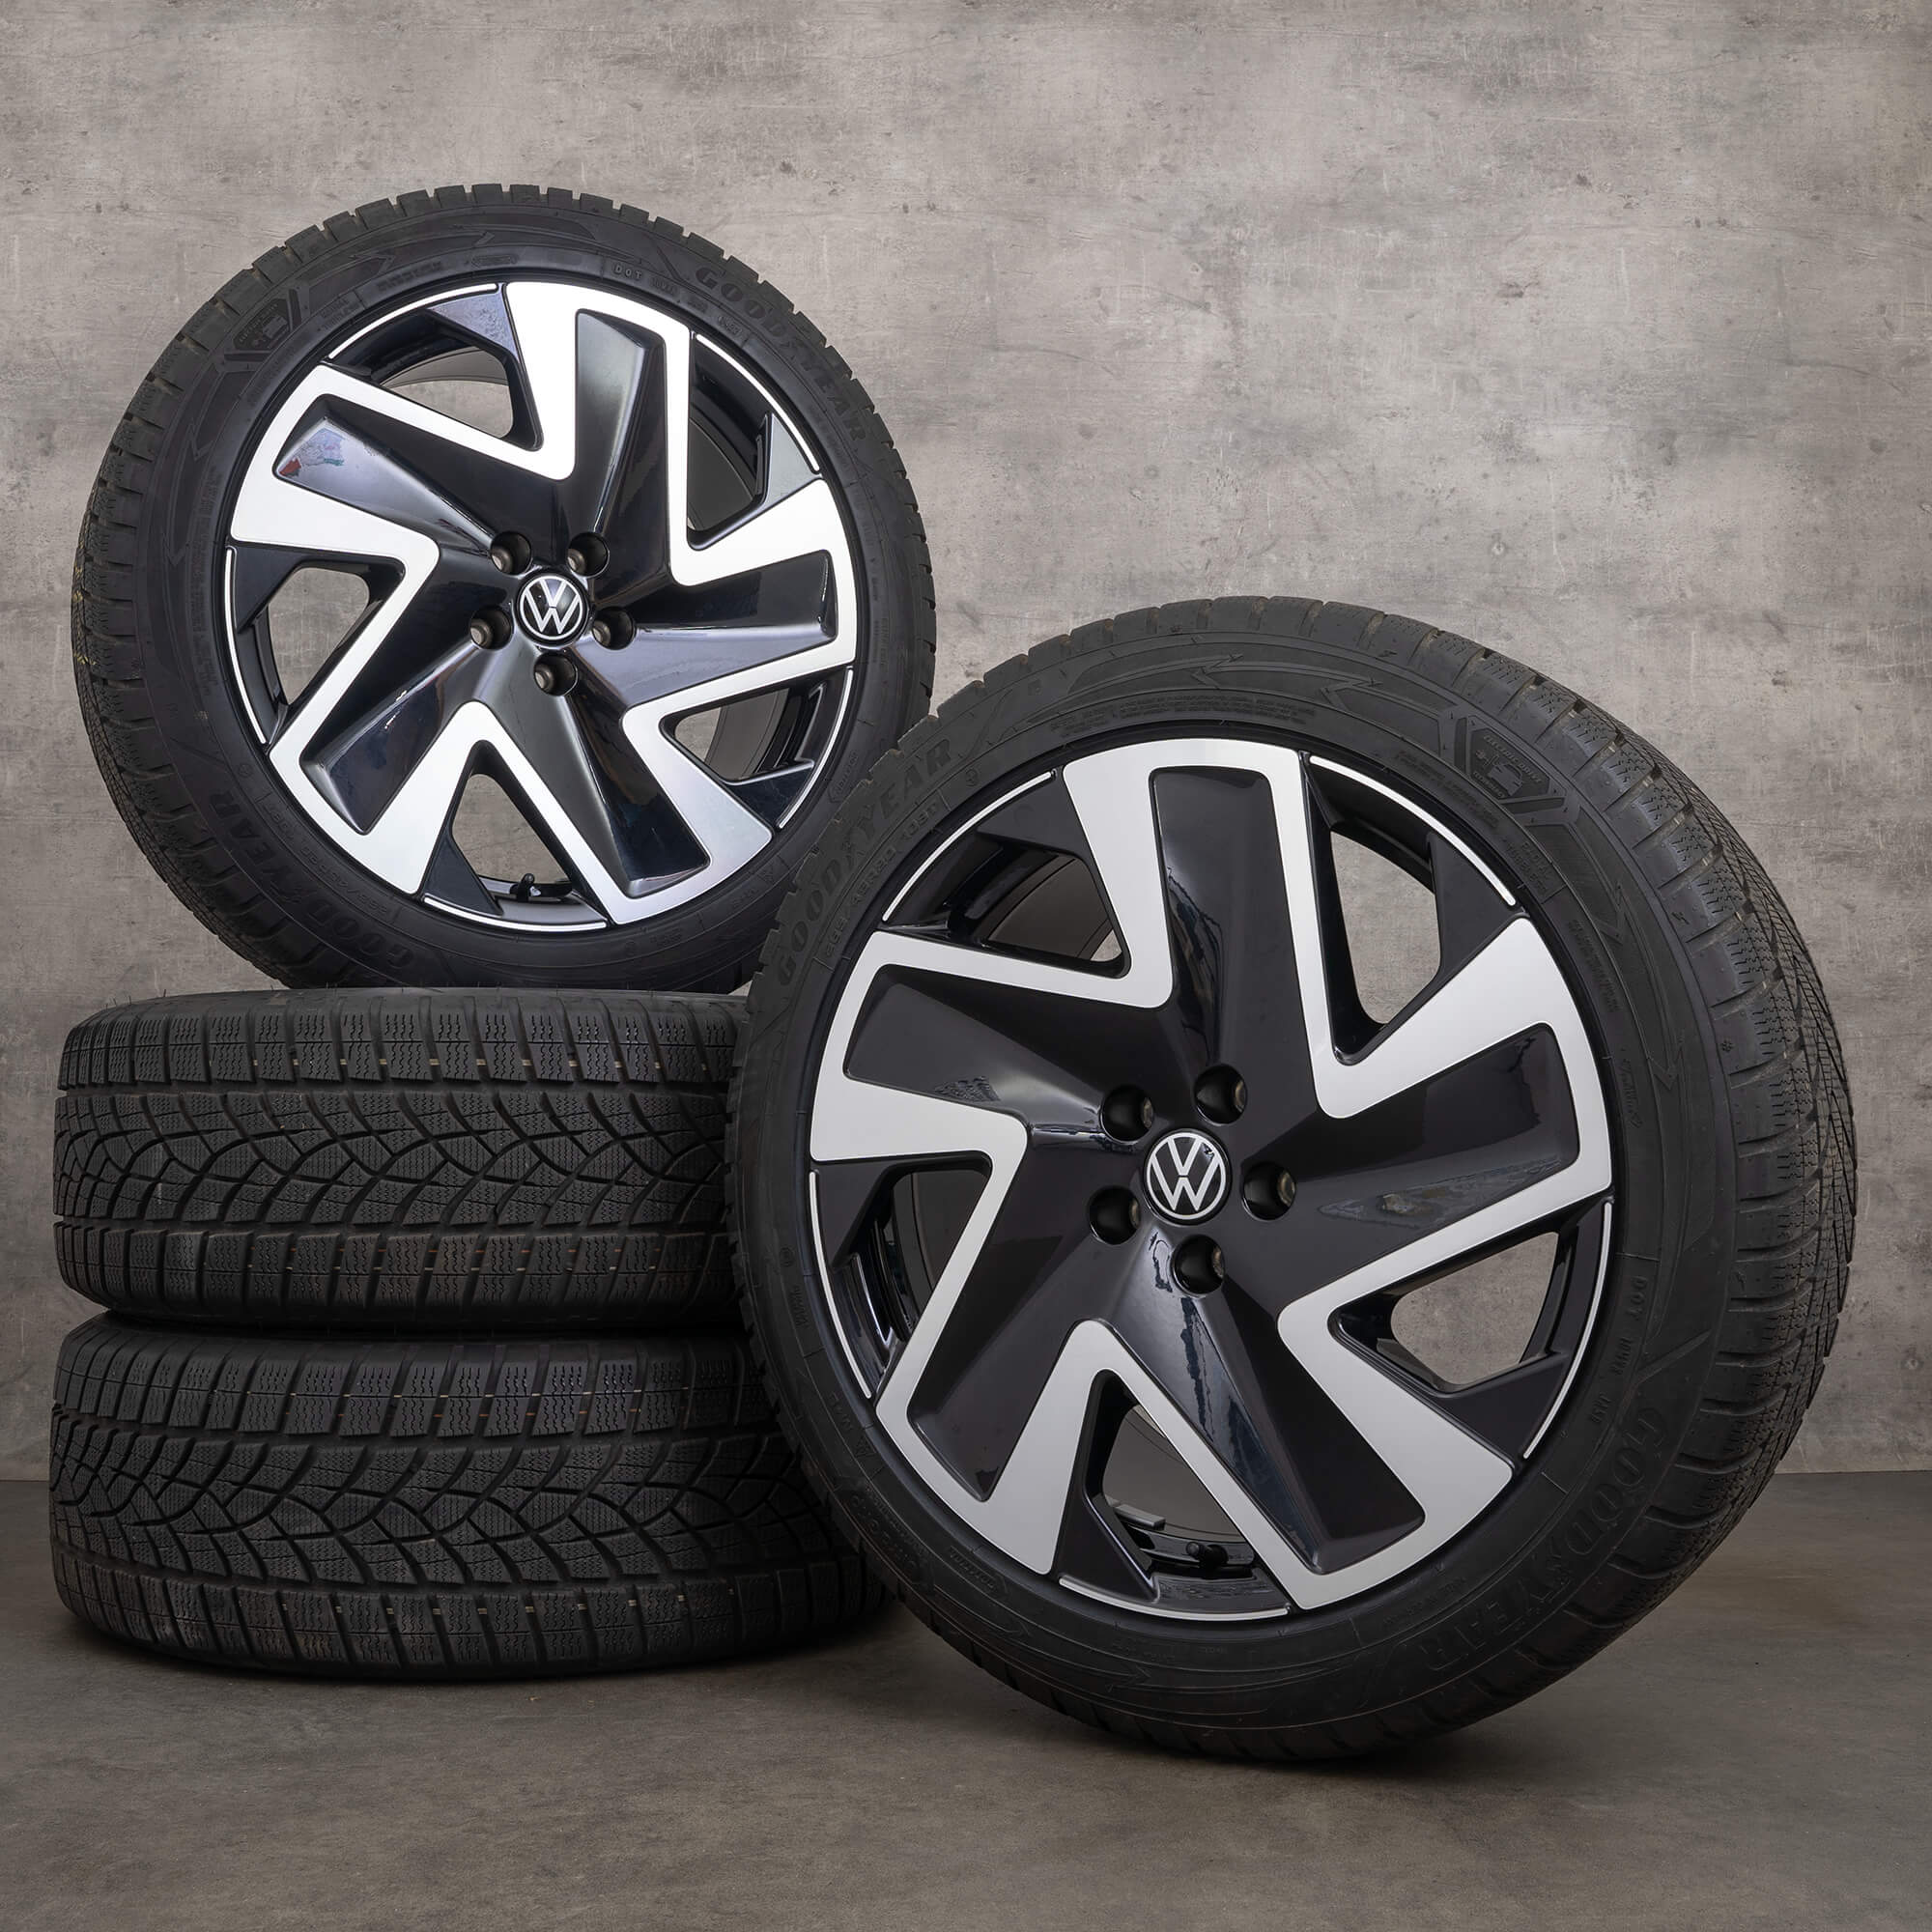 ID VW. Buzz Pro zimni alu kola 20 palcové ráfky pneumatiky Solna hliníkové 8 mm